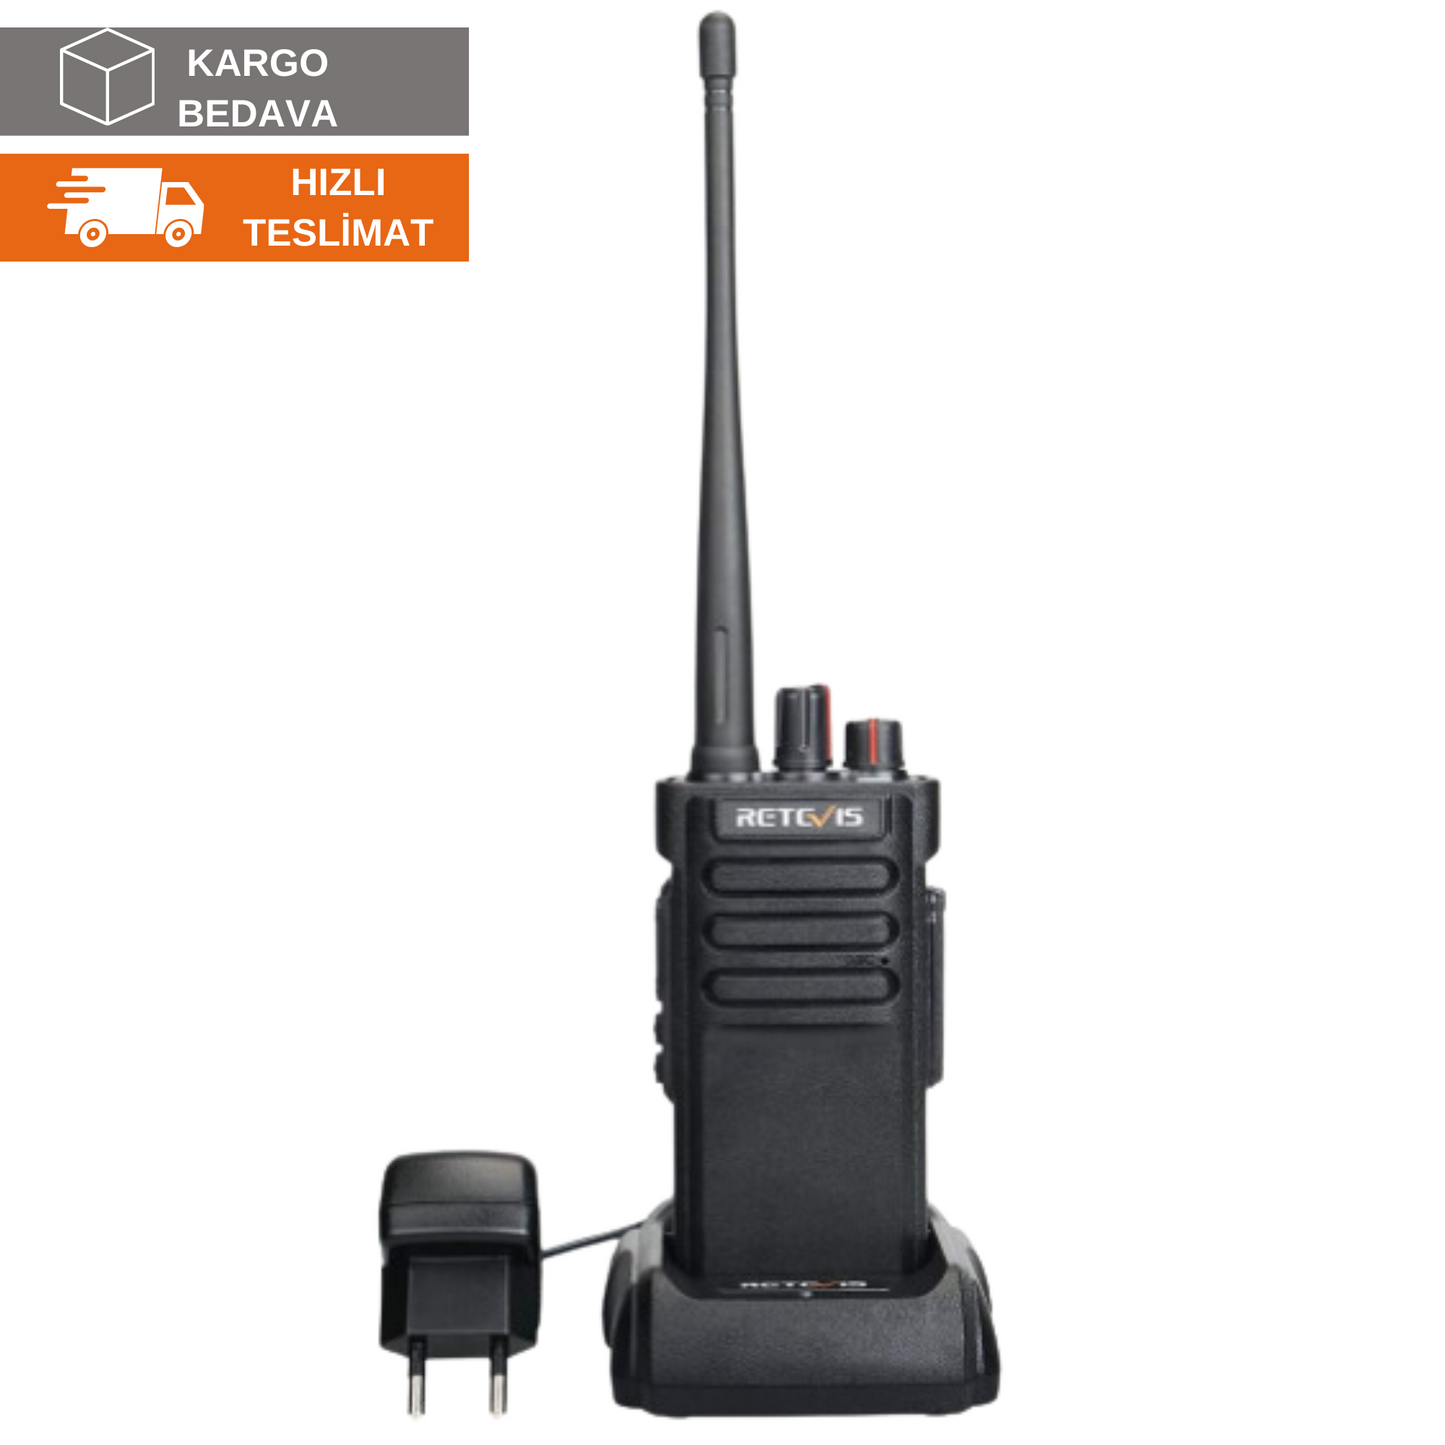 Retevis RT29 远程无线电，3200 mAh 专业手持无线电（1 件，橙色）